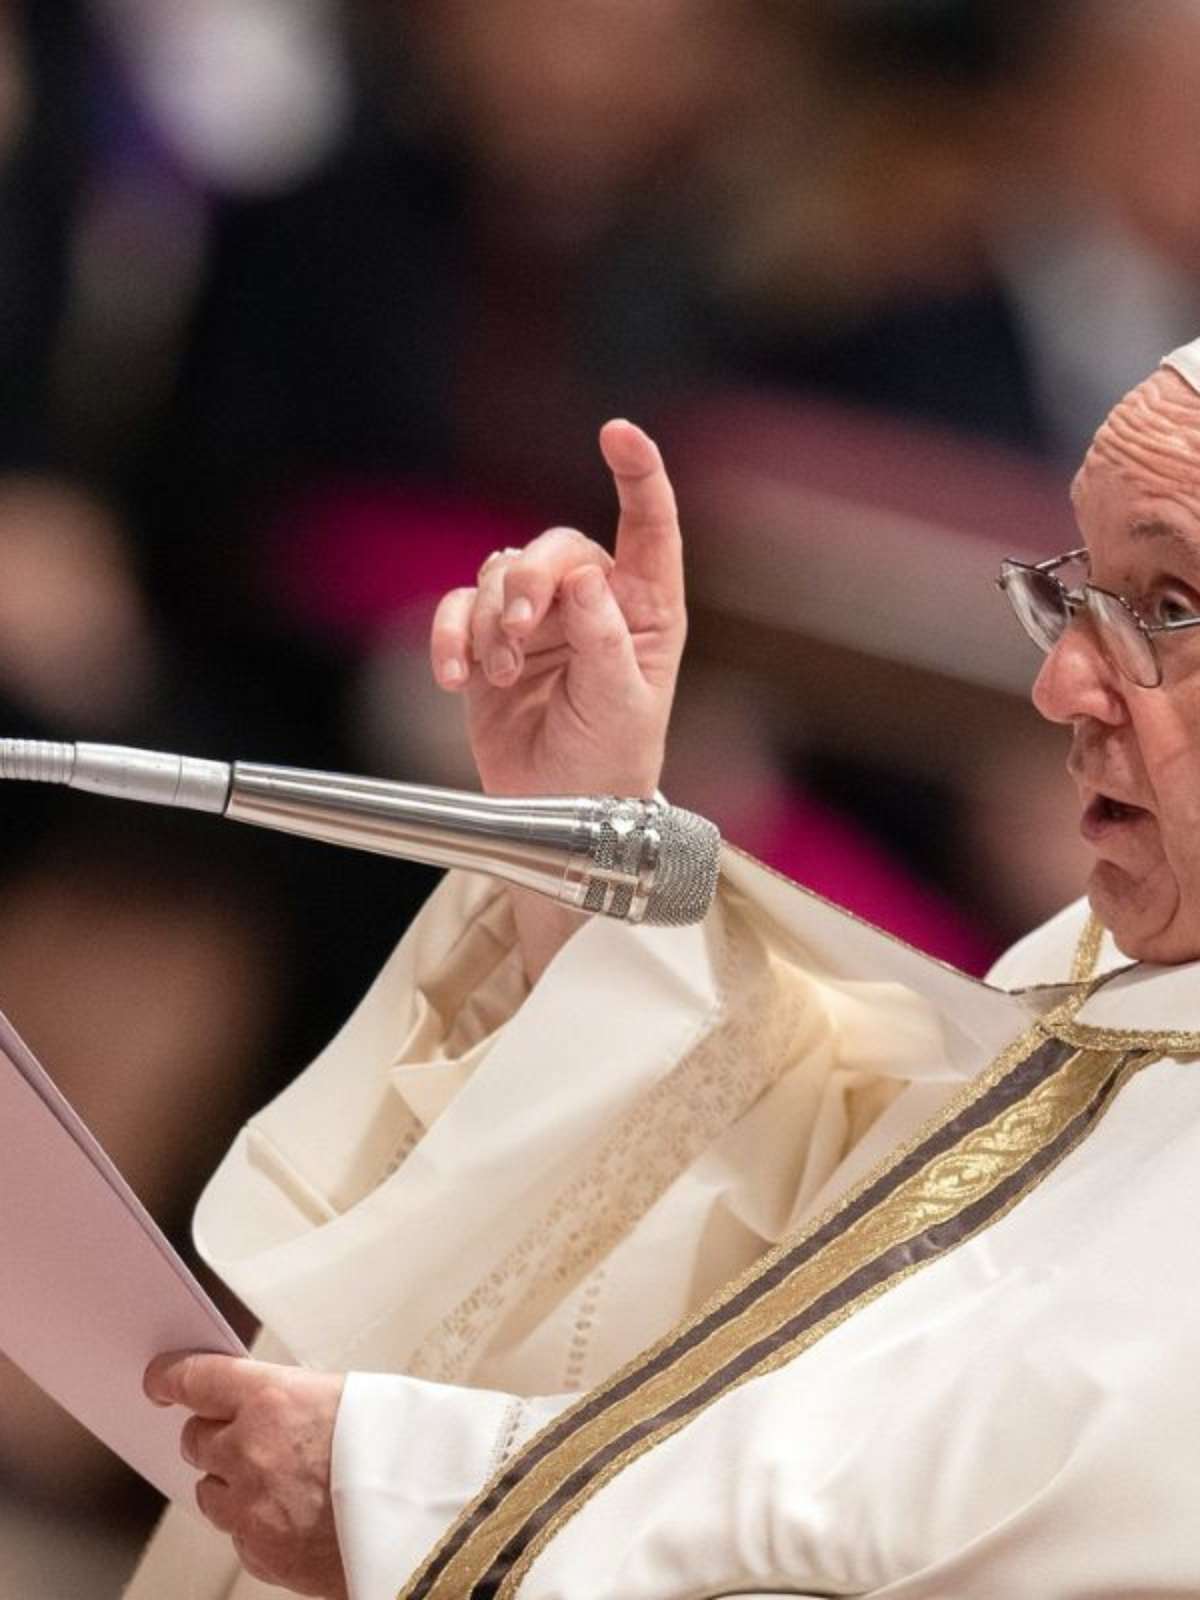 Papa fala sobre Sudão: renovo meu apelo para que a violência cesse o mais  rápido possível